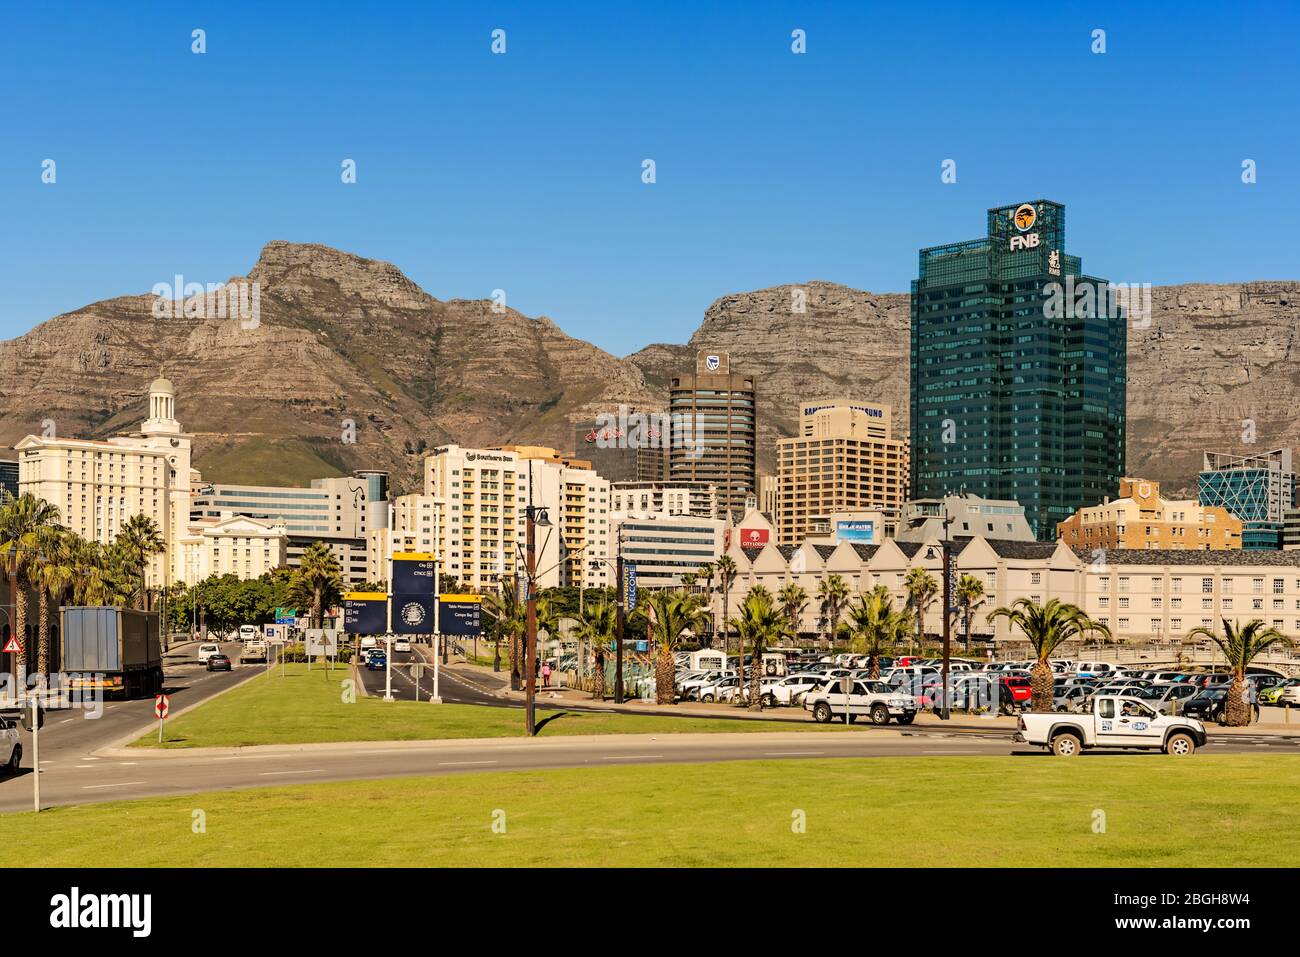 Cap, Afrique du Sud - 11 mai 2015 : vue sur les bâtiments du centre-ville du Cap avec Table Mountain à l'arrière-plan, Afrique du Sud. Banque D'Images